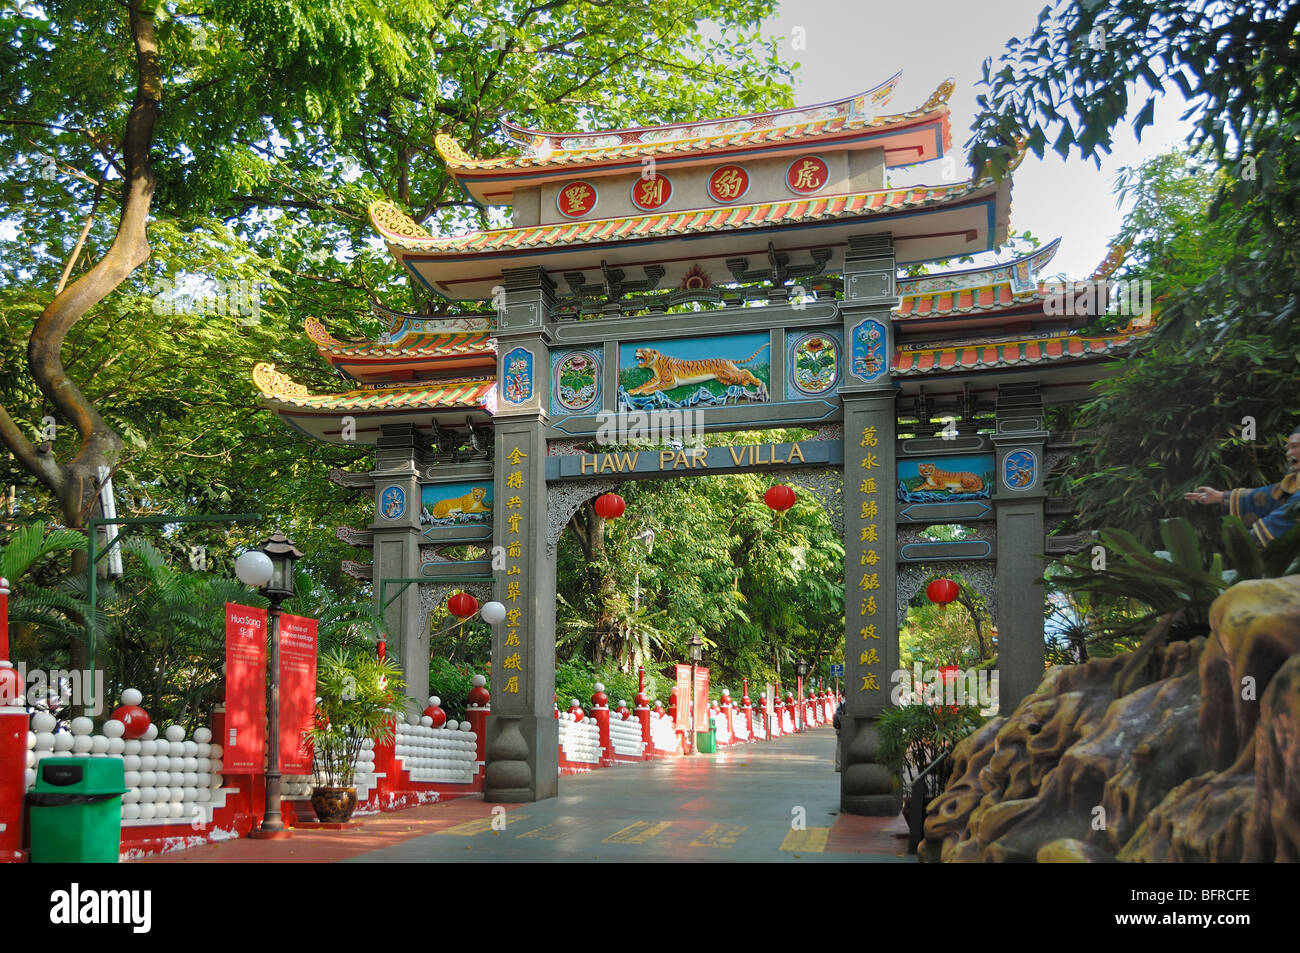 Chinesische Eingang Tor Mit Dem Tiger Balm Gardens Theme Park Oder